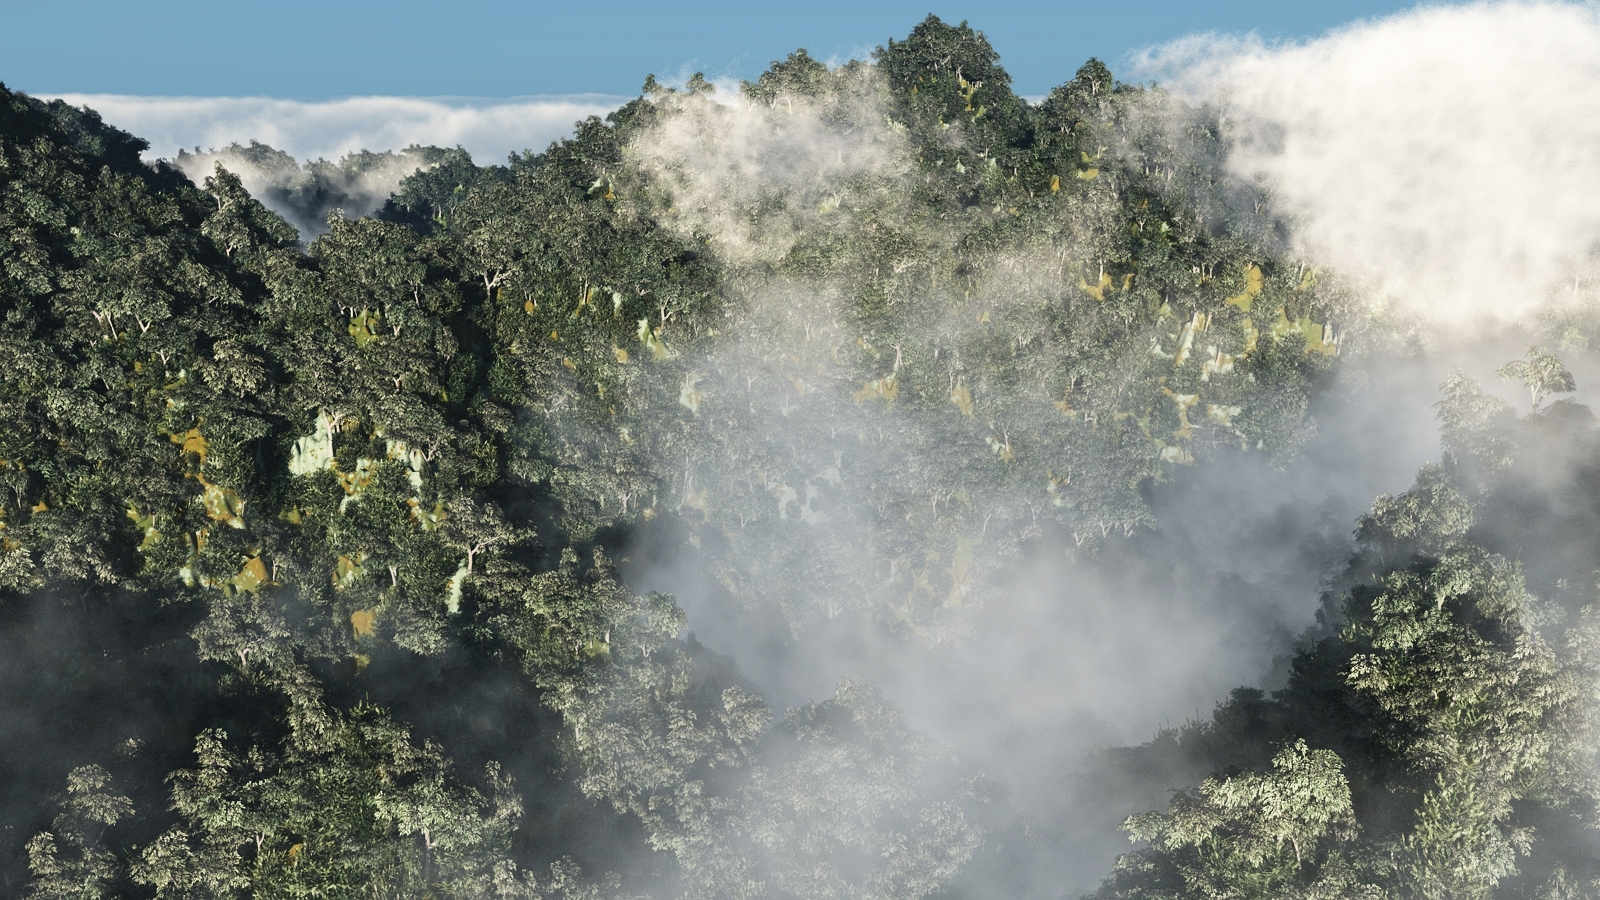 mountain trees mist